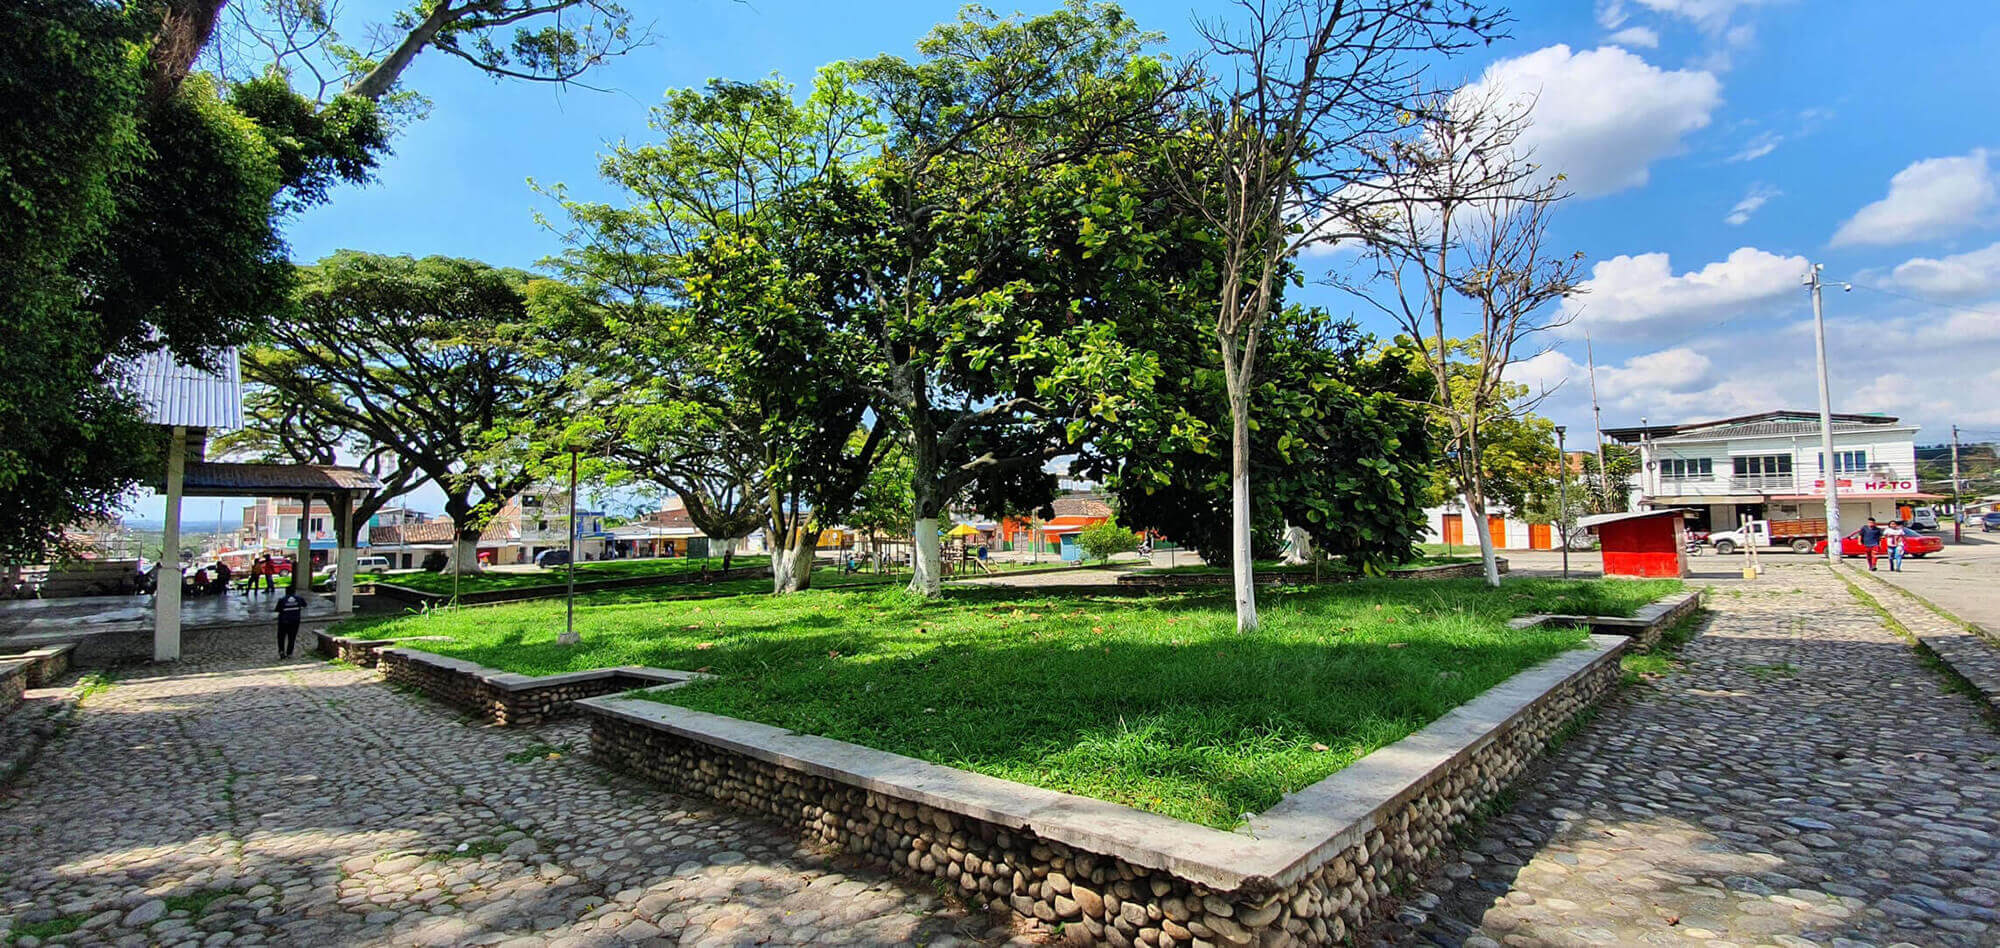 “Parque de la plazoleta municipal Nizar Bonilla”. Fotografía: Jaír Cerón Velasco para el CNMH, 2020.